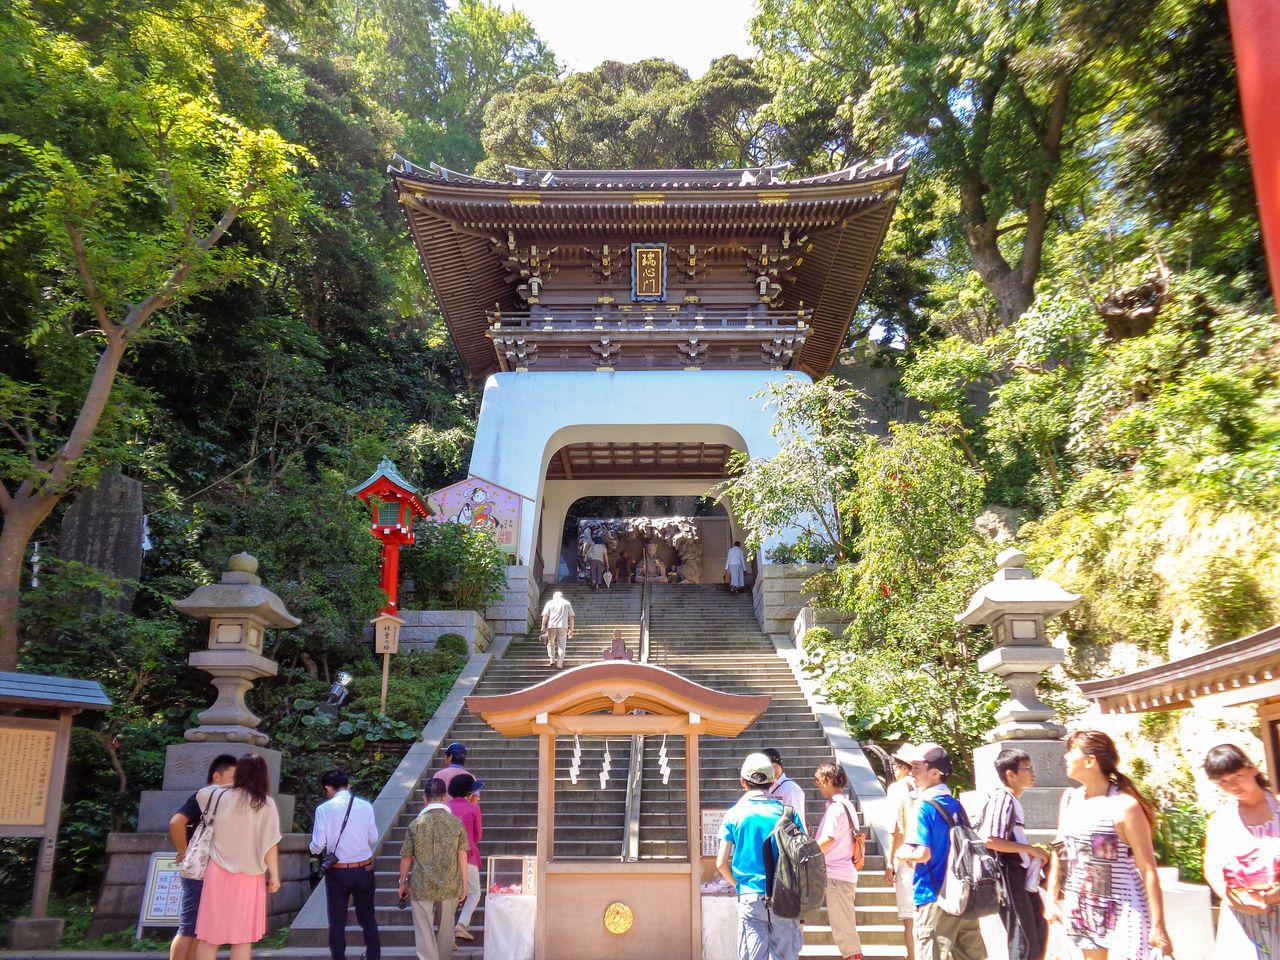 بوابة معبد إنوشيما مصممة على غرار قصر ”ريوغو جو“ الأسطوري الموجود تحت سطح البحر وفق المعتقدات الشعبية اليابانية (بإذن من معبد إنوشيما).